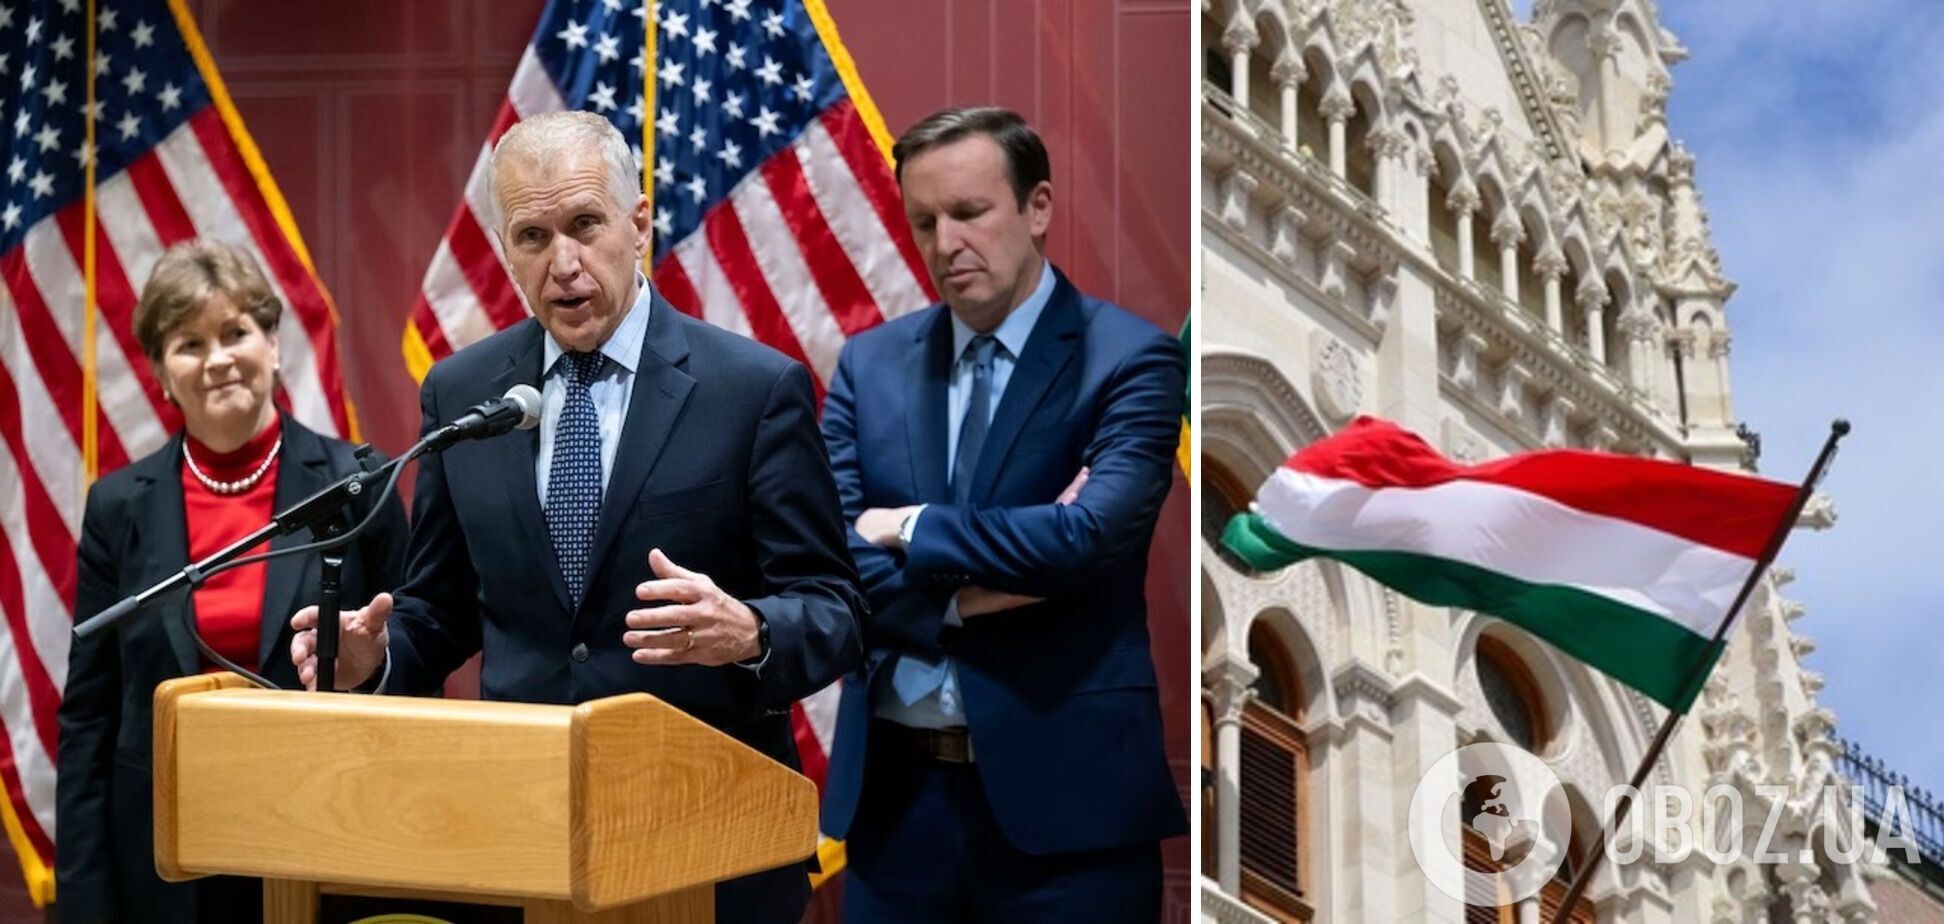 Уряд Угорщини відмовився приймати делегацію сенаторів США, які прибули у Будапешт: у WP дізнались подробиці